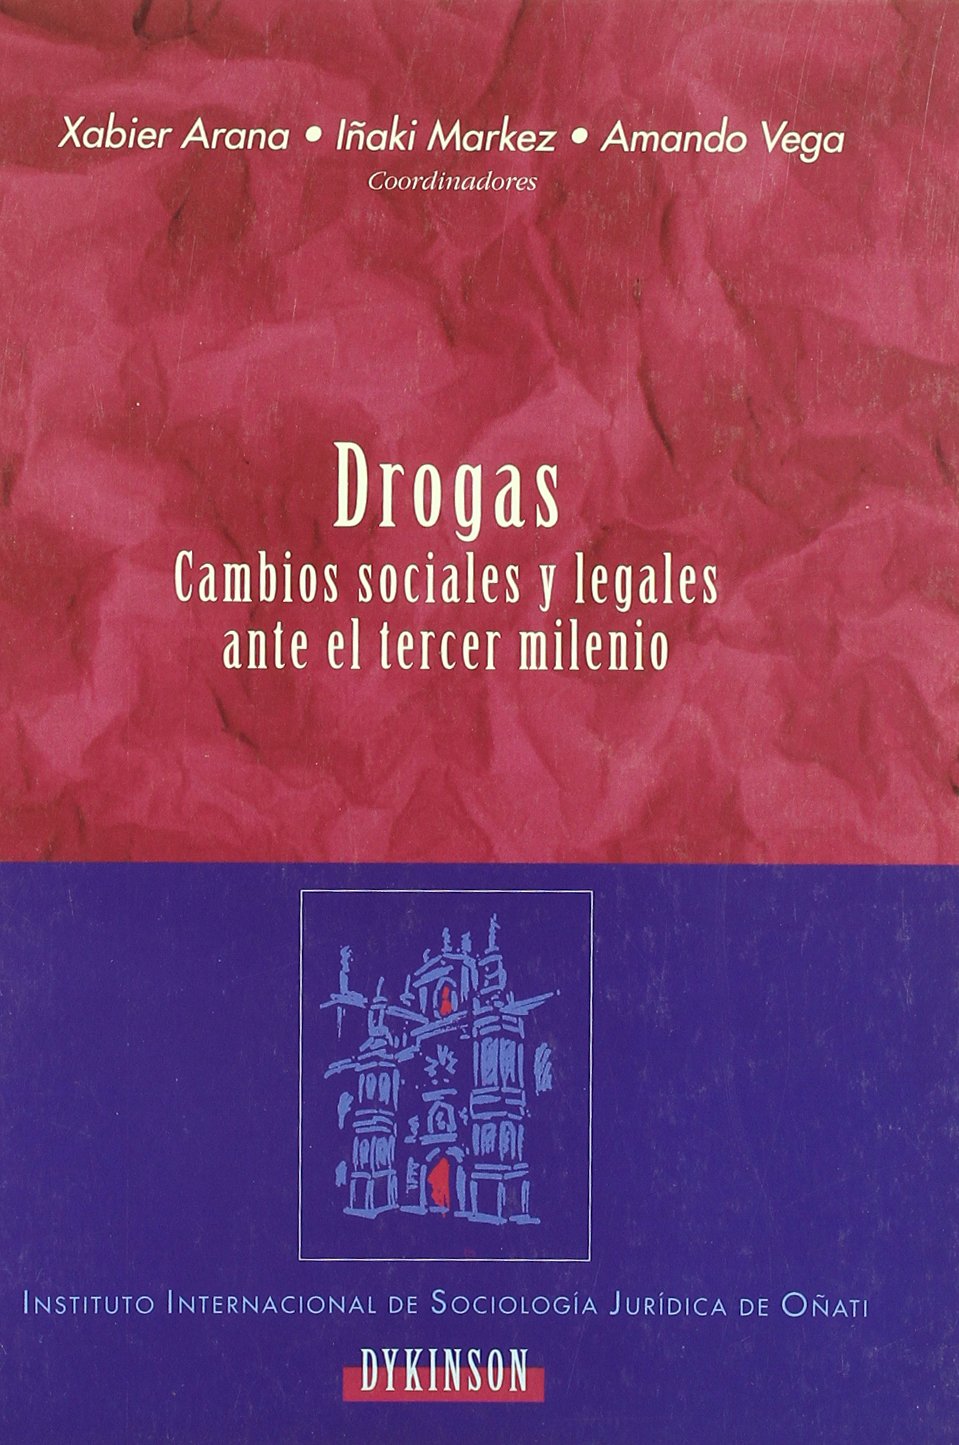 DROGAS CAMBIOS SOCIALES Y LEGALES TERCER MILENIO-9788481555752